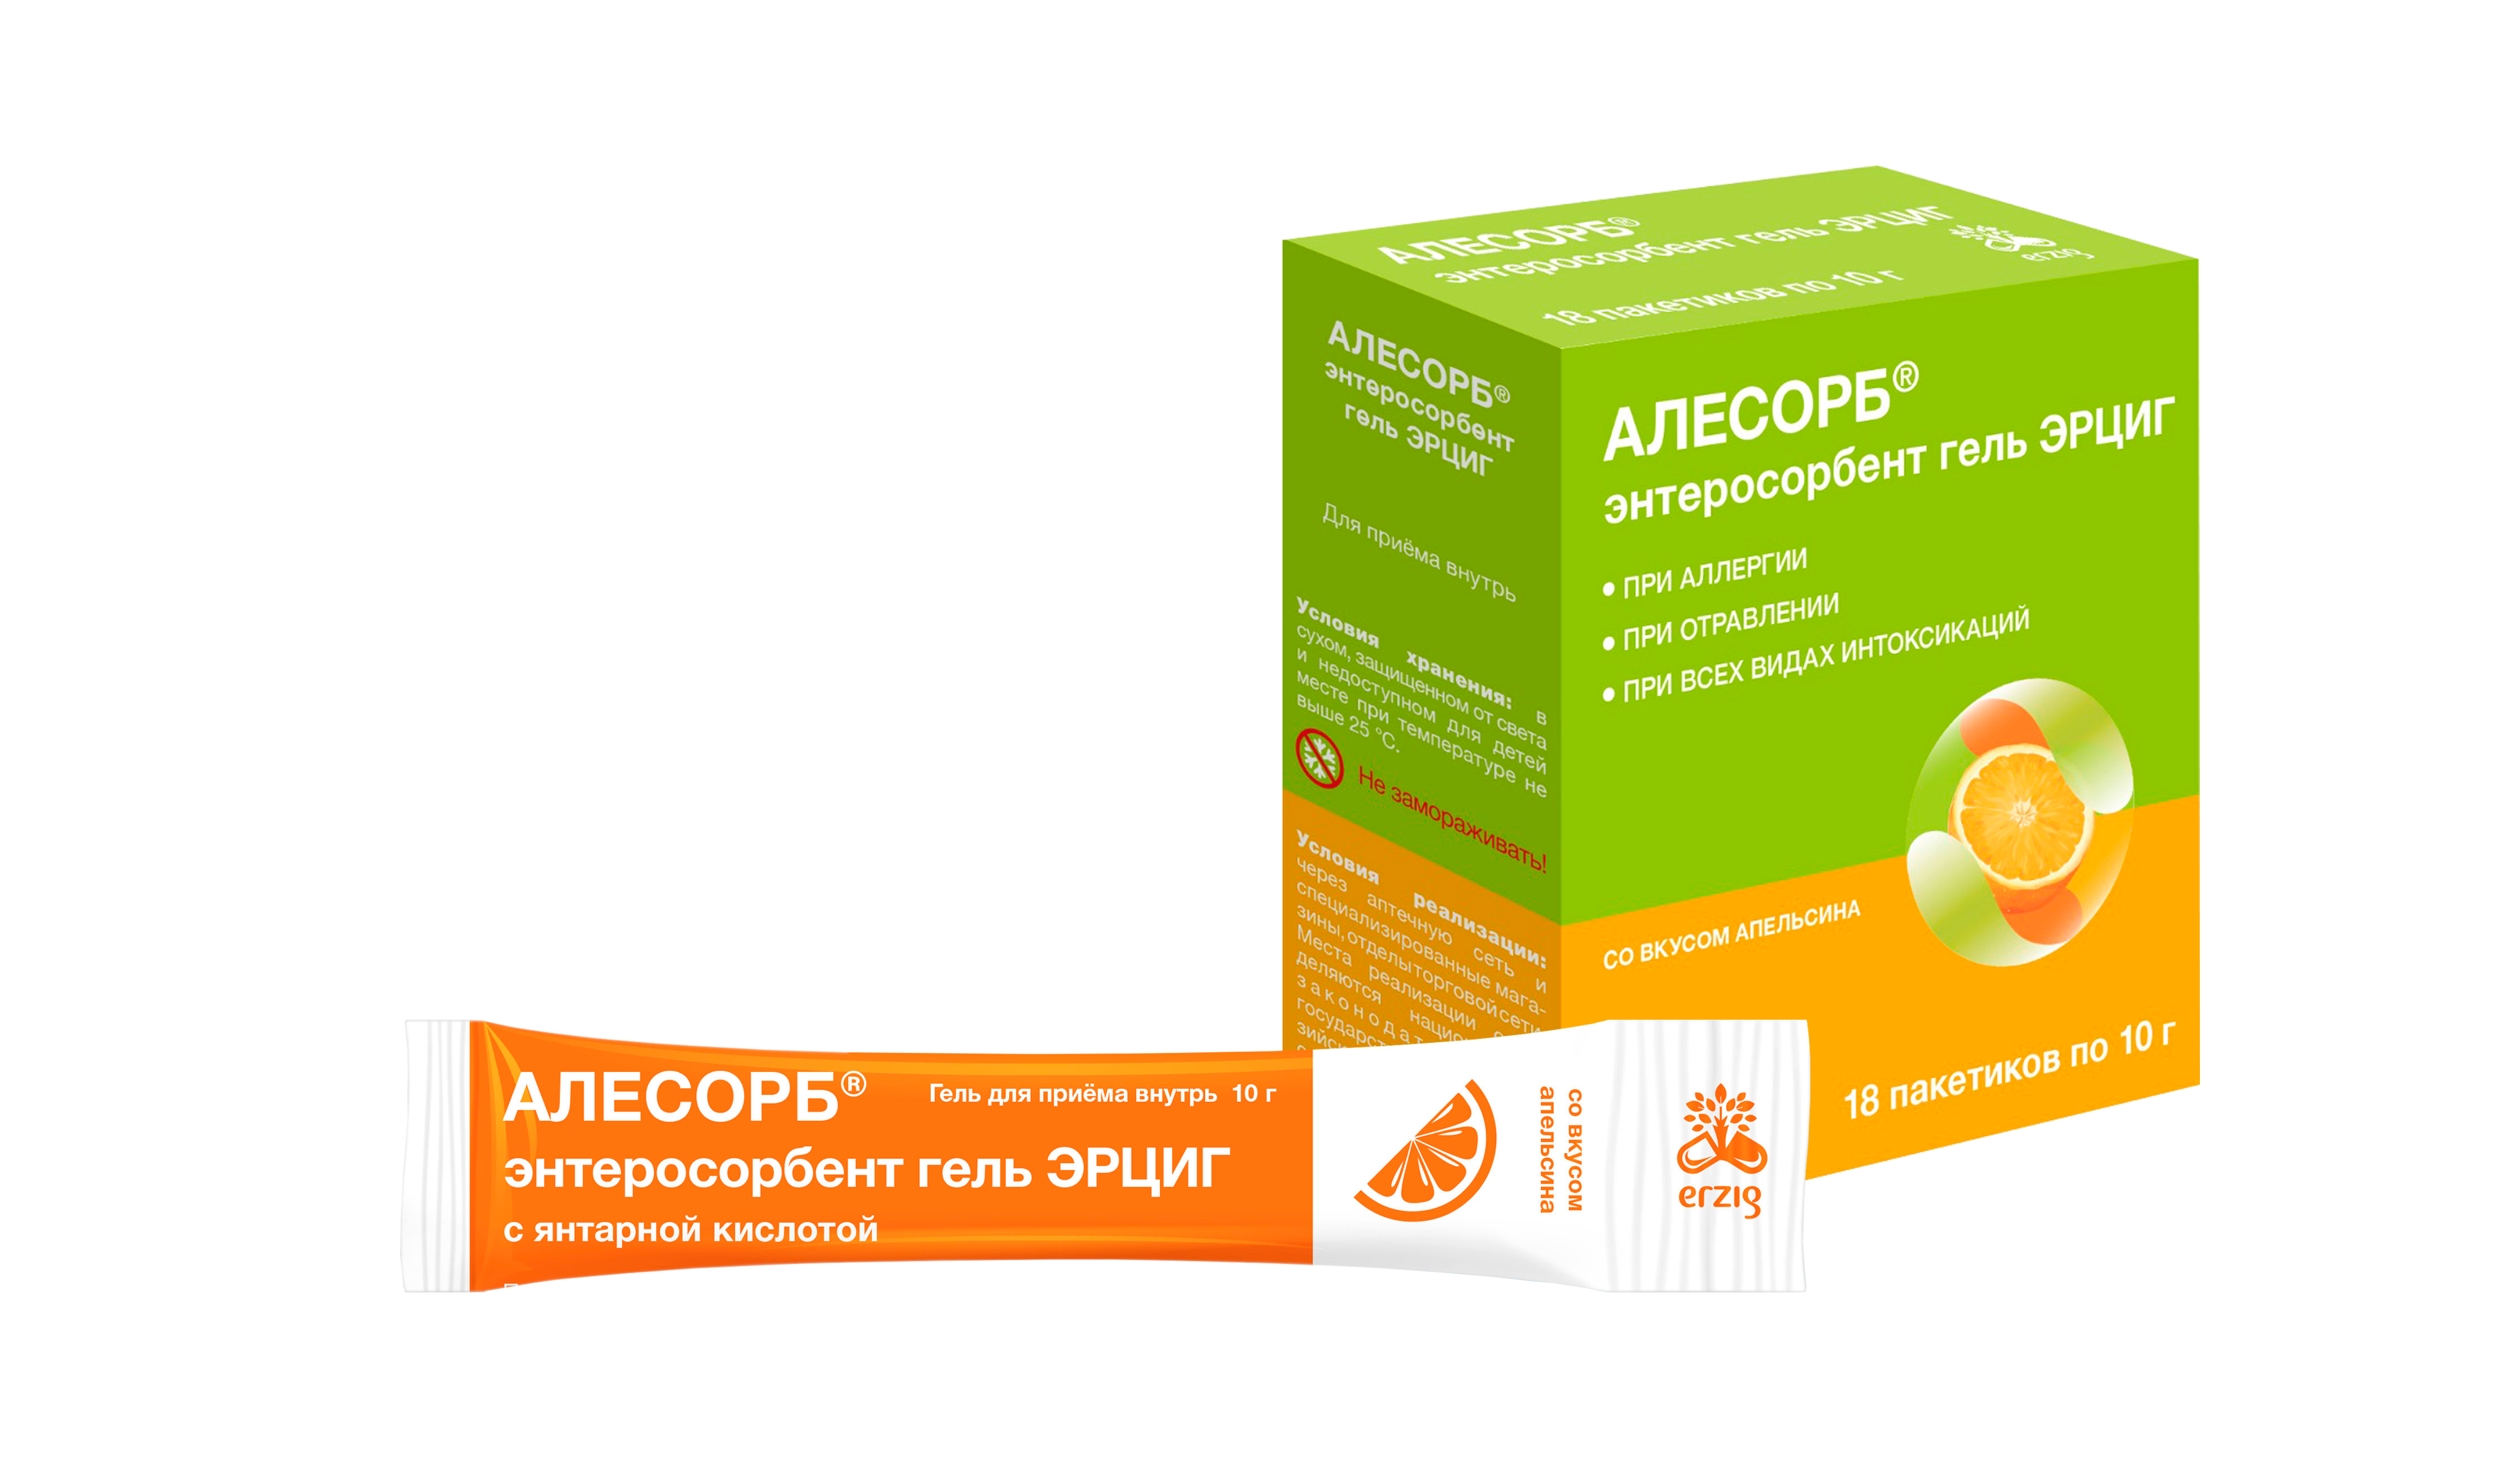 Алесорб, энтеросорбент гель Эрциг+ (апельсин), пакетики 10 г, 18 шт. энтерозоо энтеросорбент для животных саше 20 гр